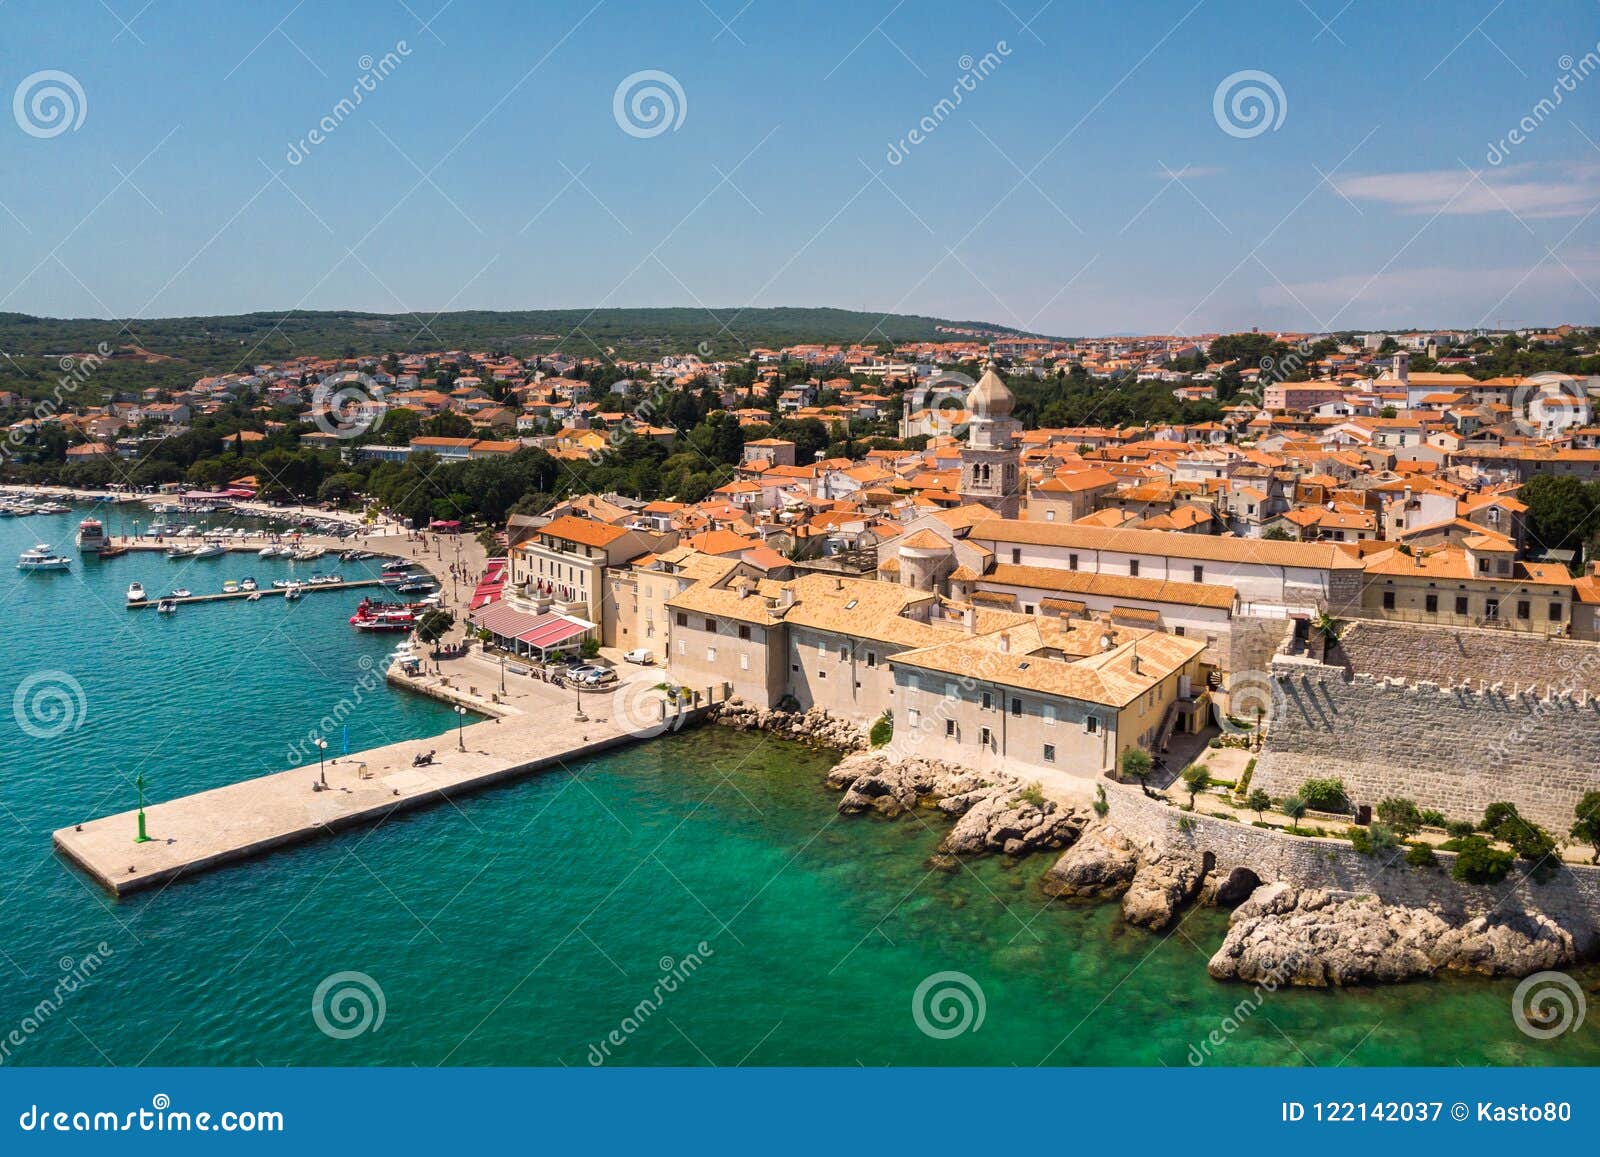 aerial view of mediterranean coastal old town krk, island krk, croatia